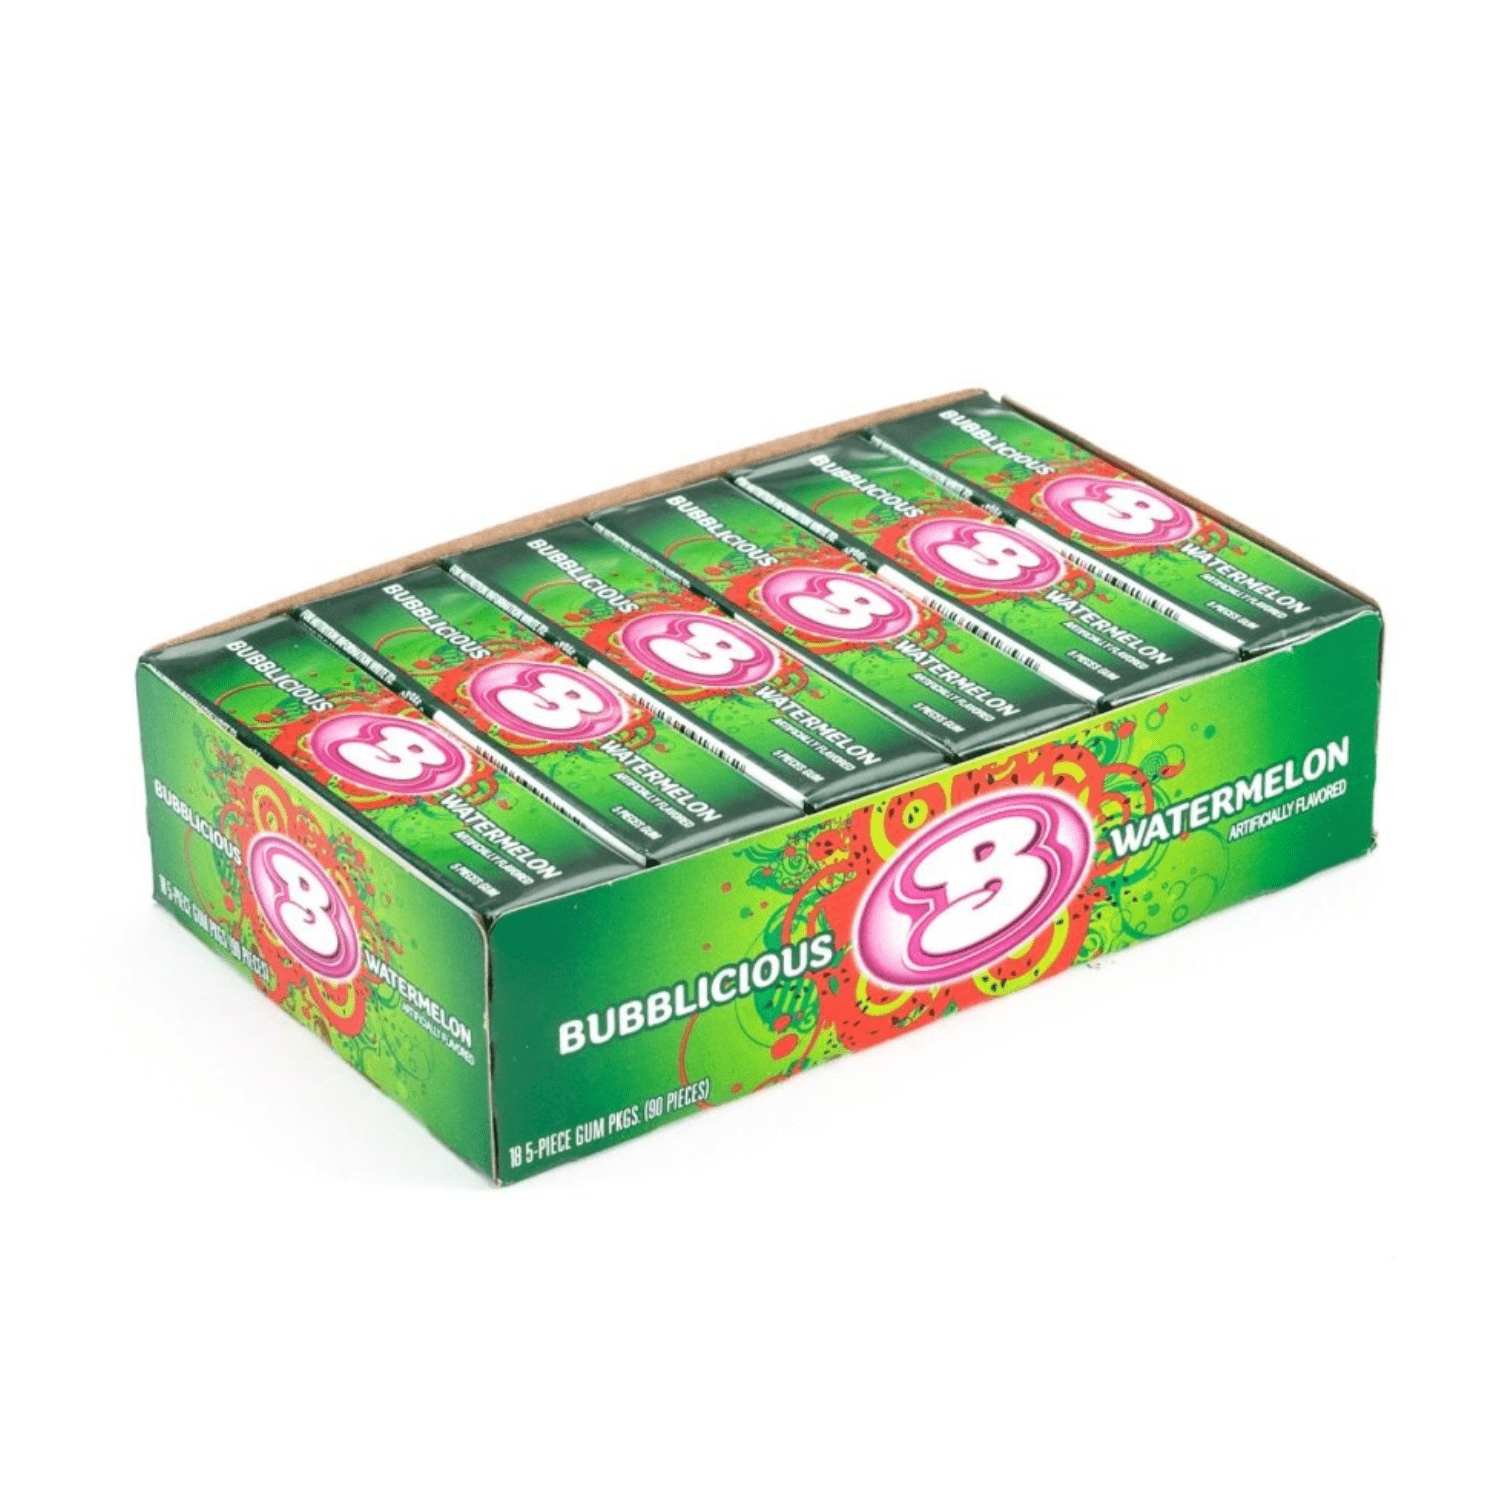 Bubblicious Watermelon Bubble Gum Bulk Box (1.36 oz, 18 ct.) - Vintage Candy Co.